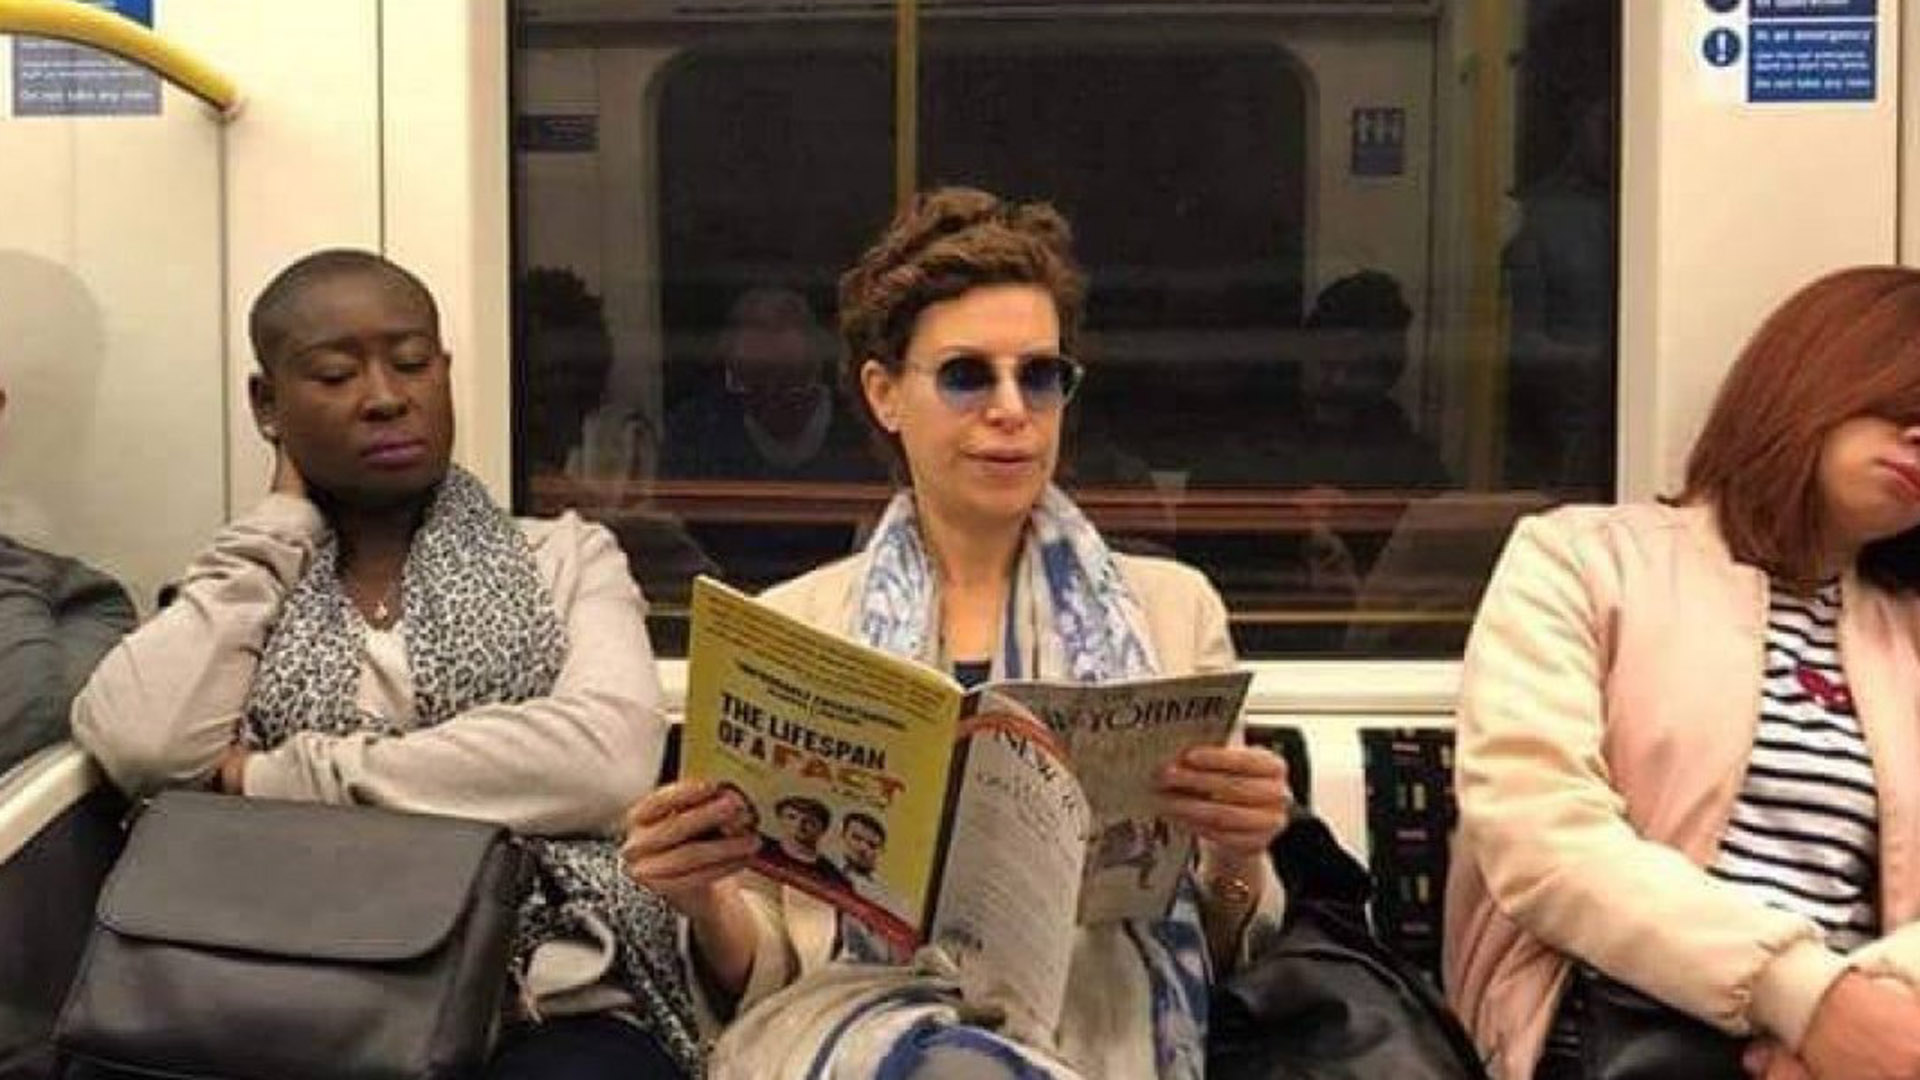 La fotografía de Karime Macías en el metro de Londres causó indignación en México por la despreocupación con la que se pasea en el extranjero